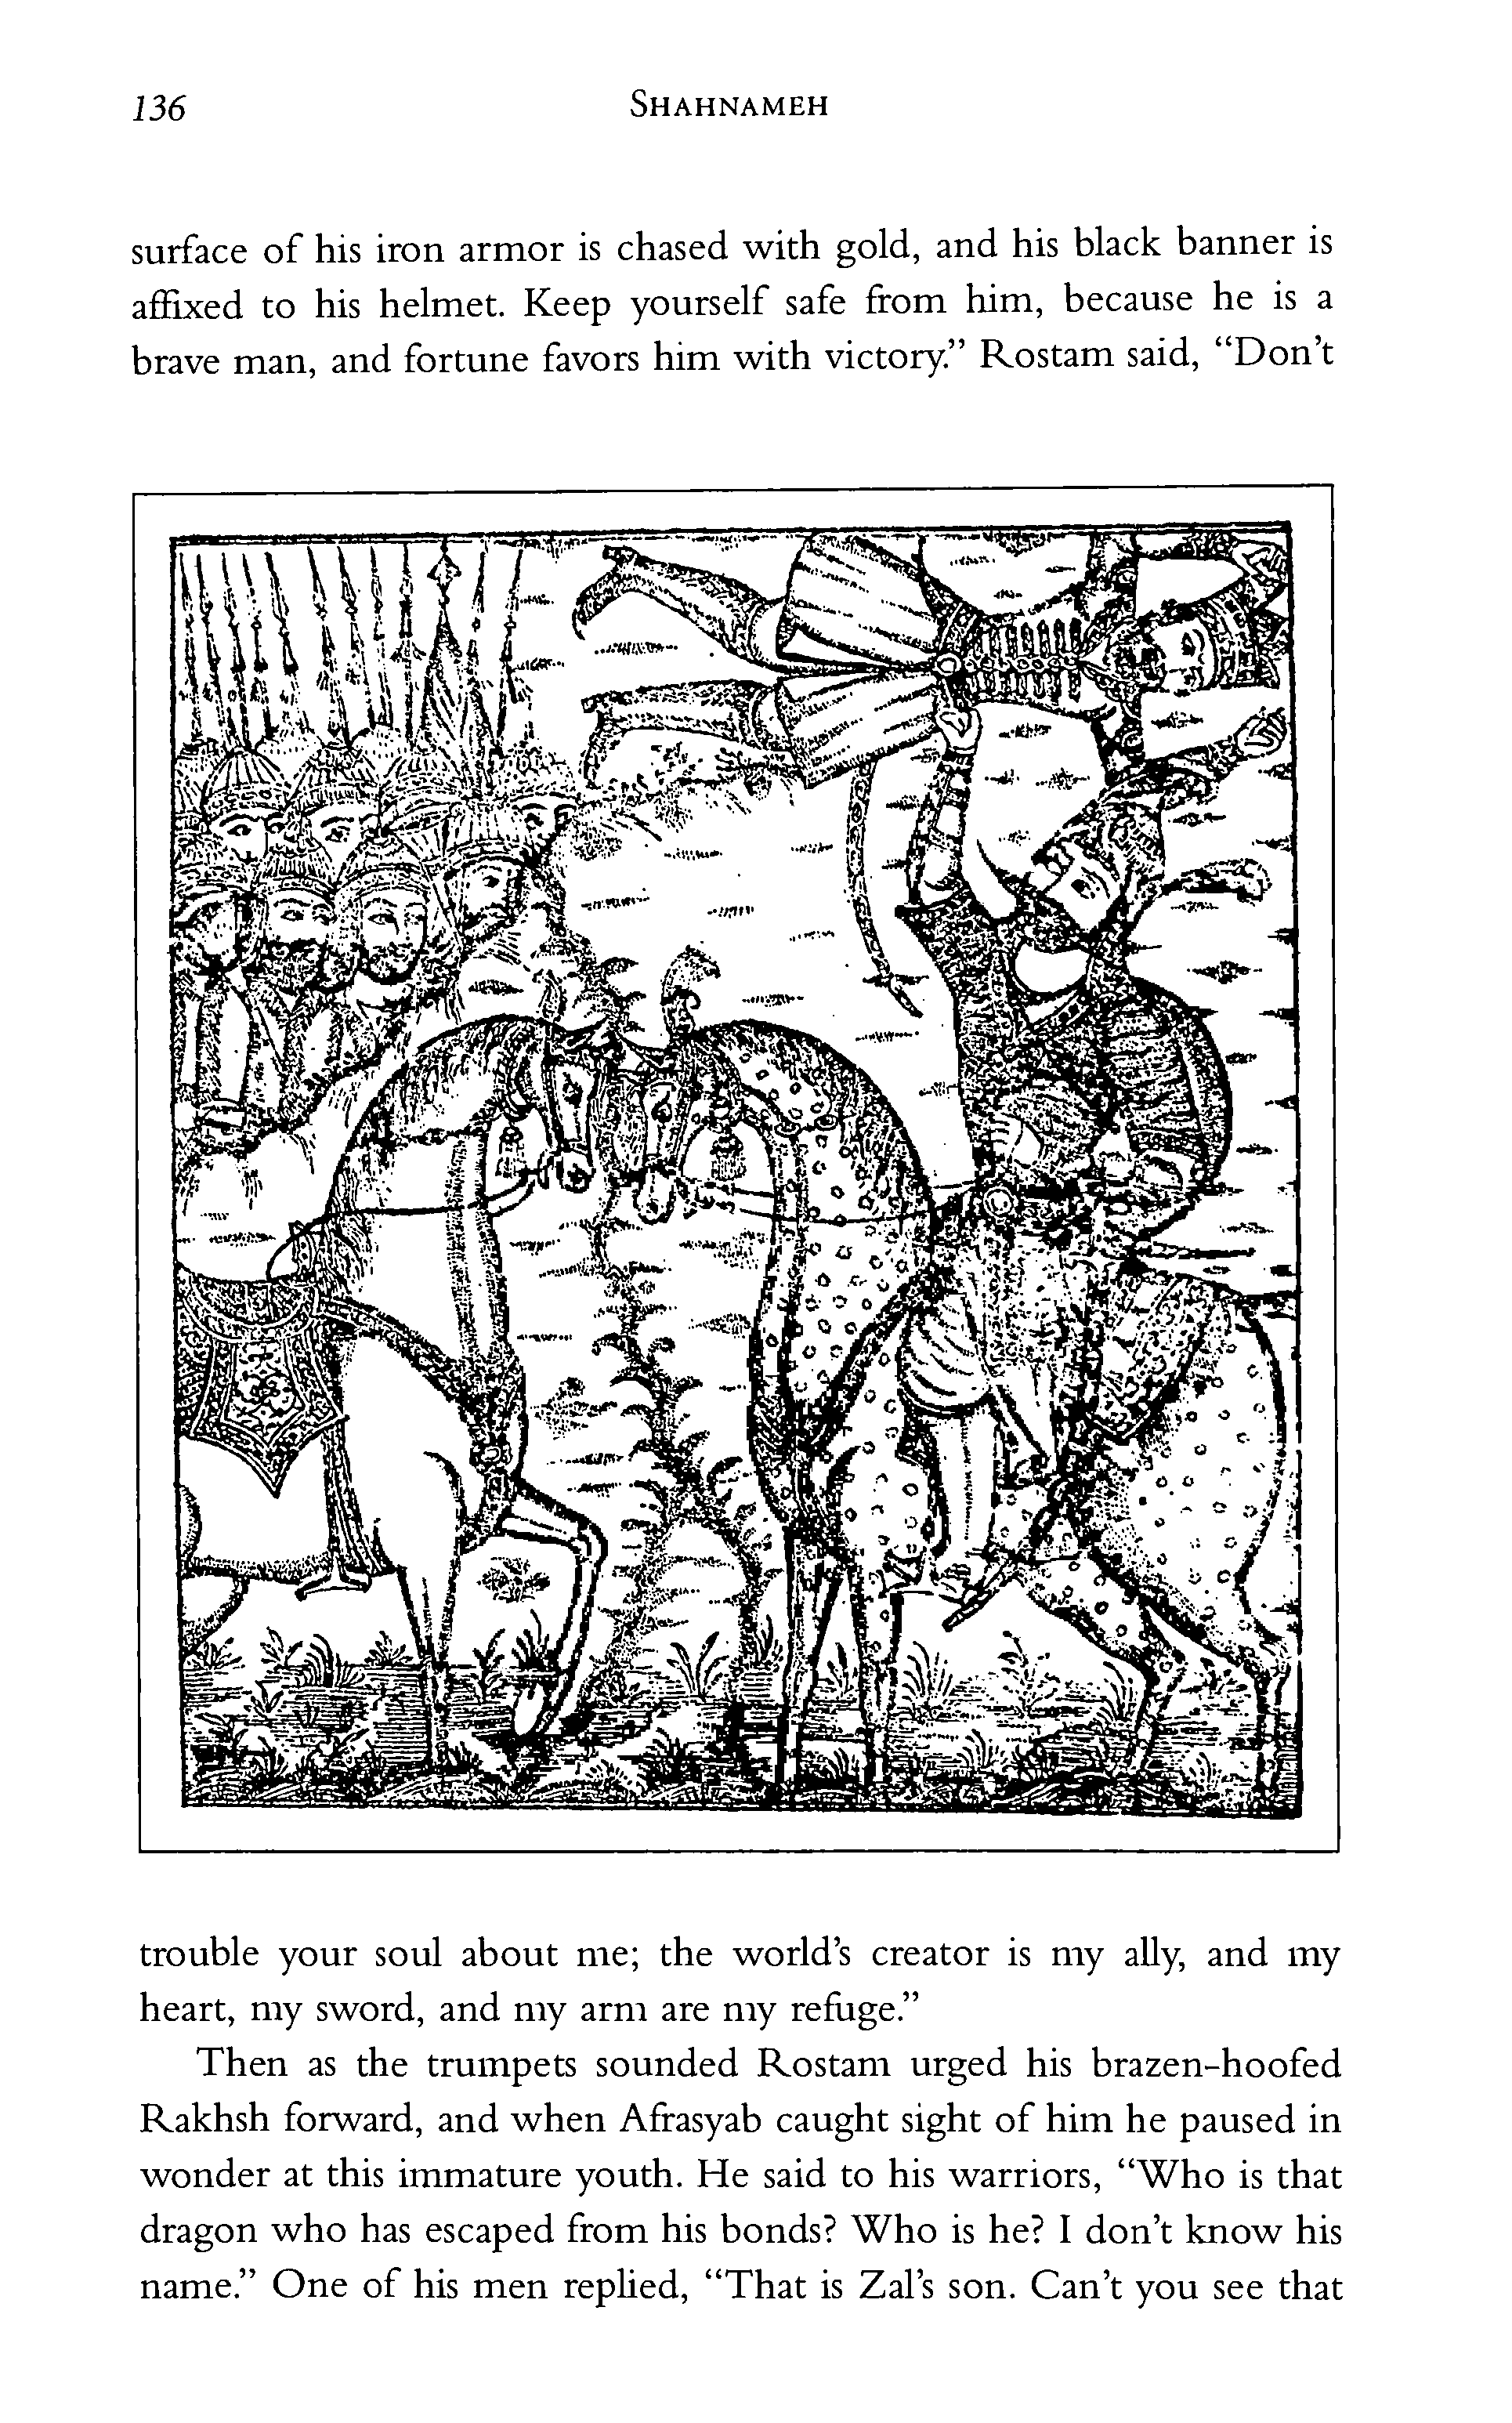 p. 136